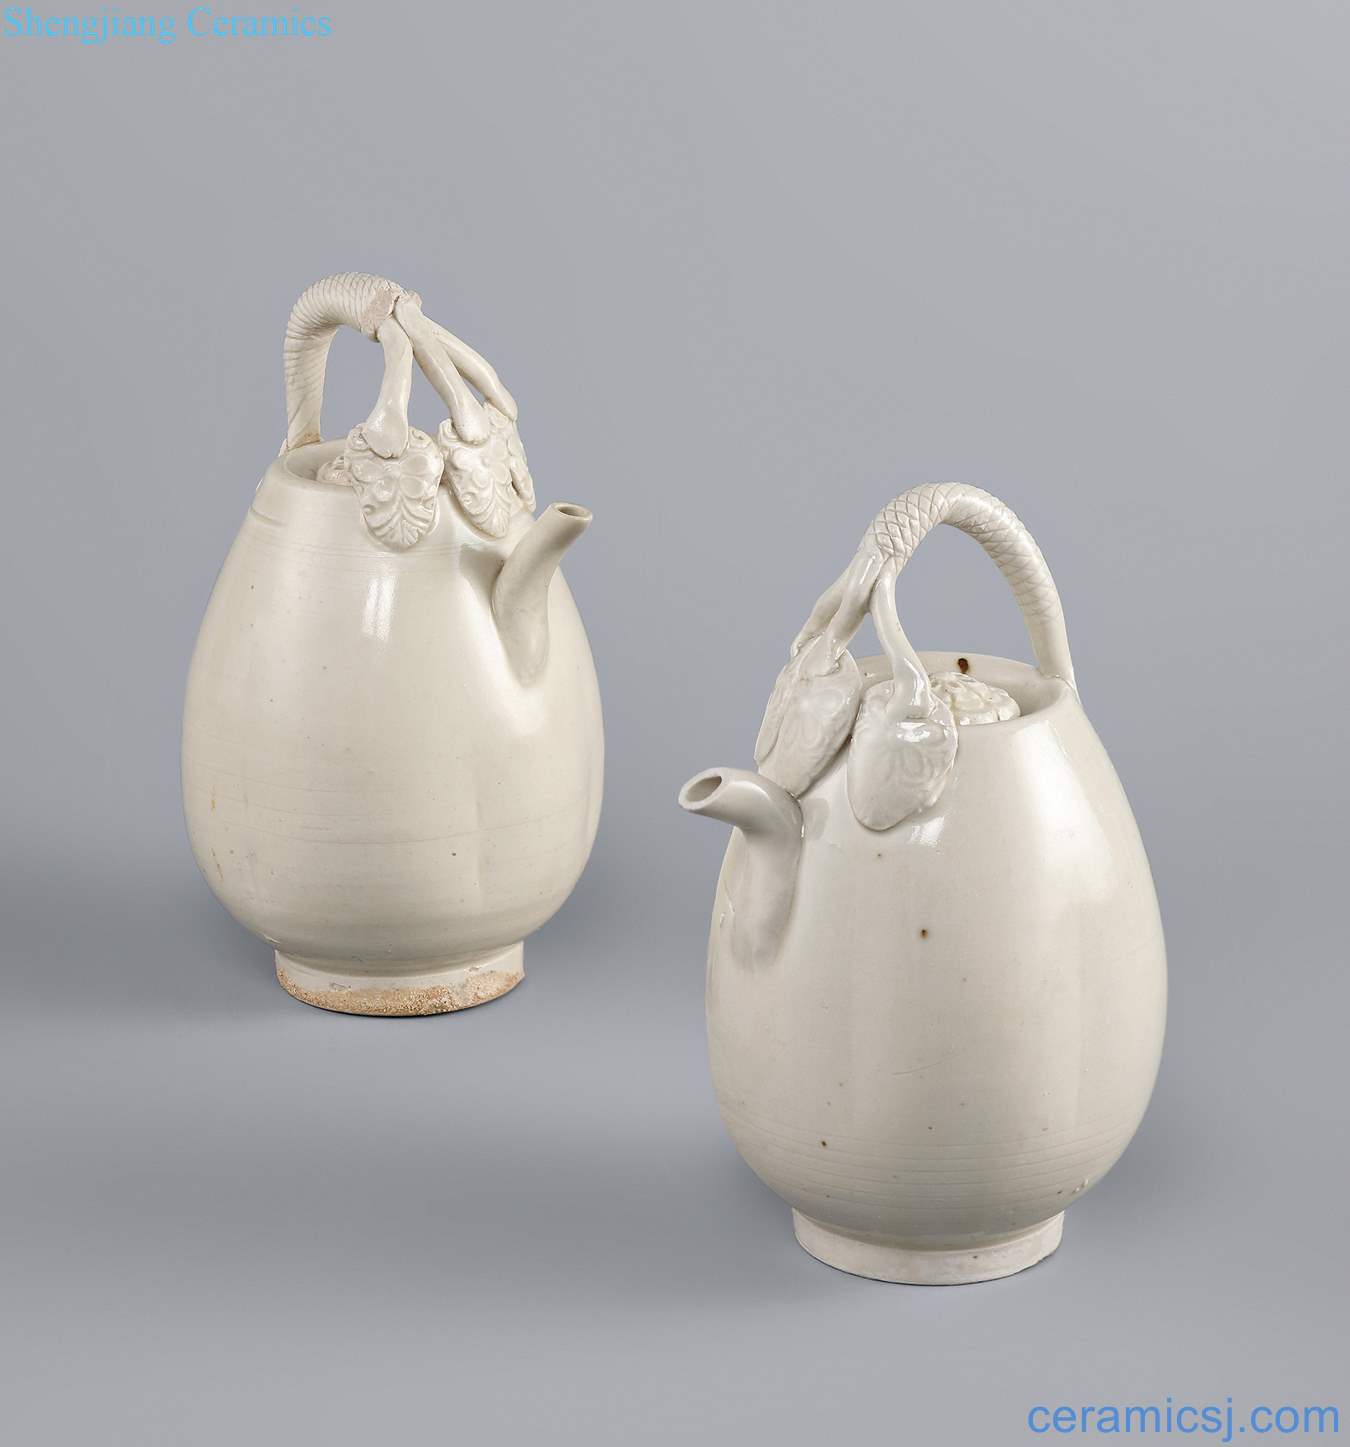 Liao (916-1125), white glaze melon prismatic trigeminal girder pot (a)